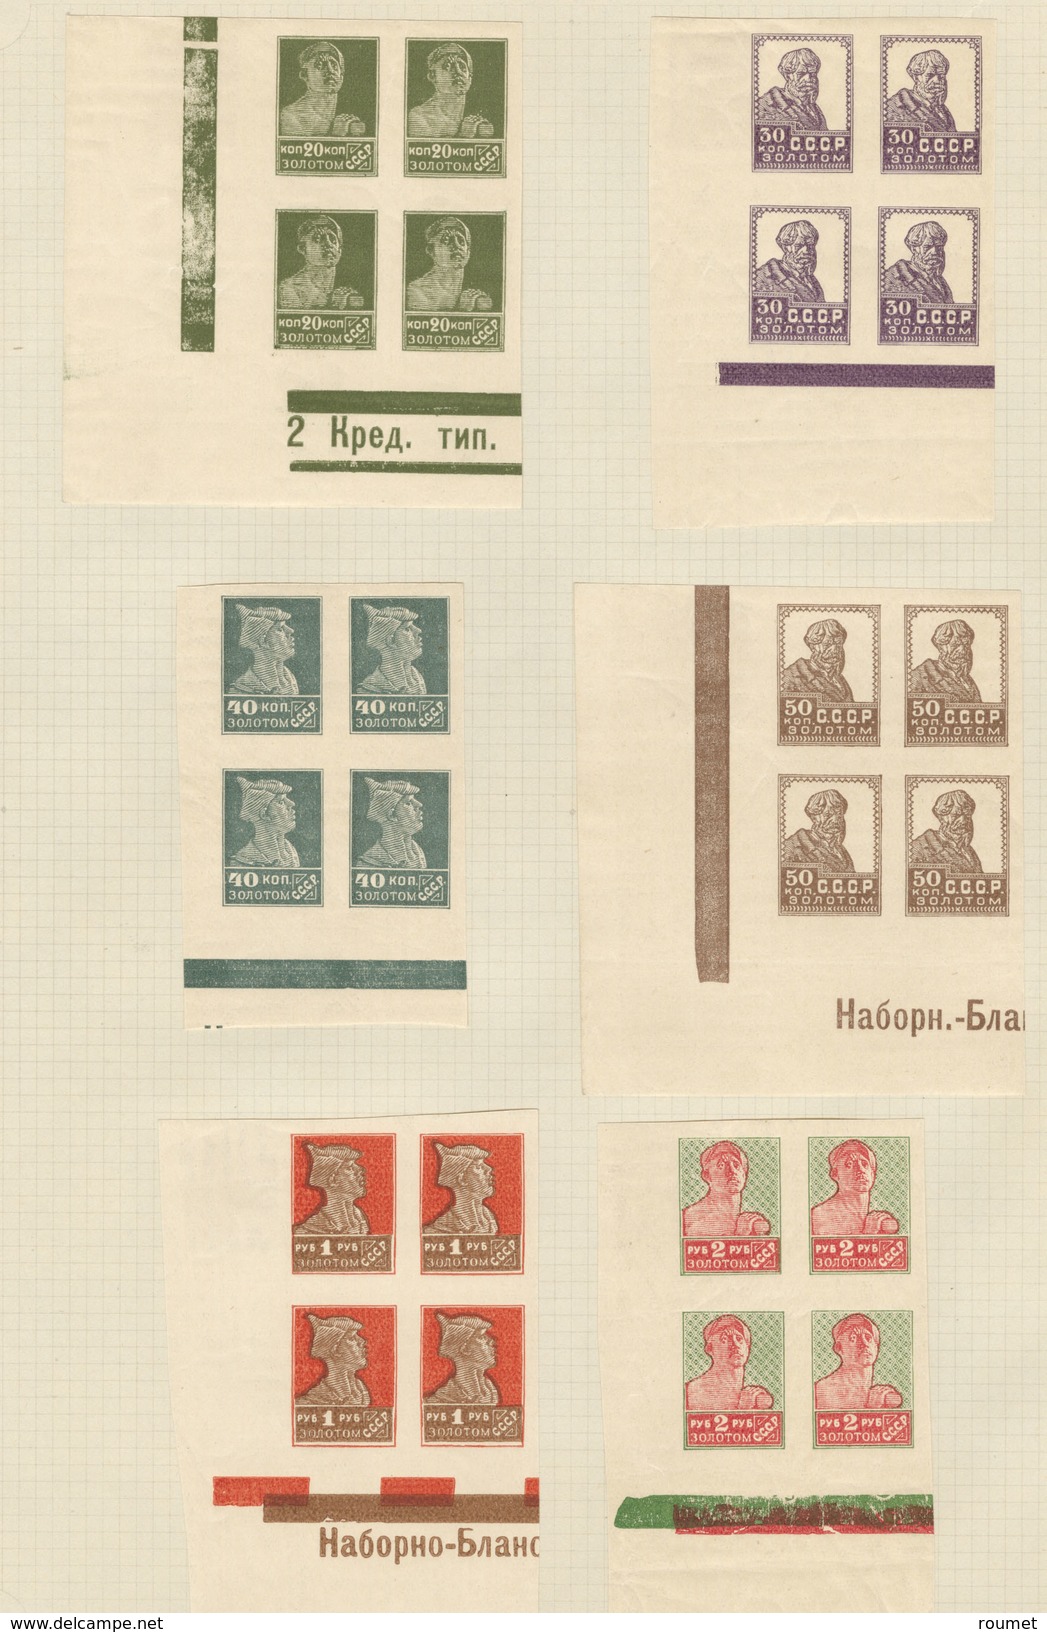 * Collection. 1921-1960 (Poste, PA, BF), bel ensemble, valeurs moyennes et séries complètes, nuances, des paire, bloc de